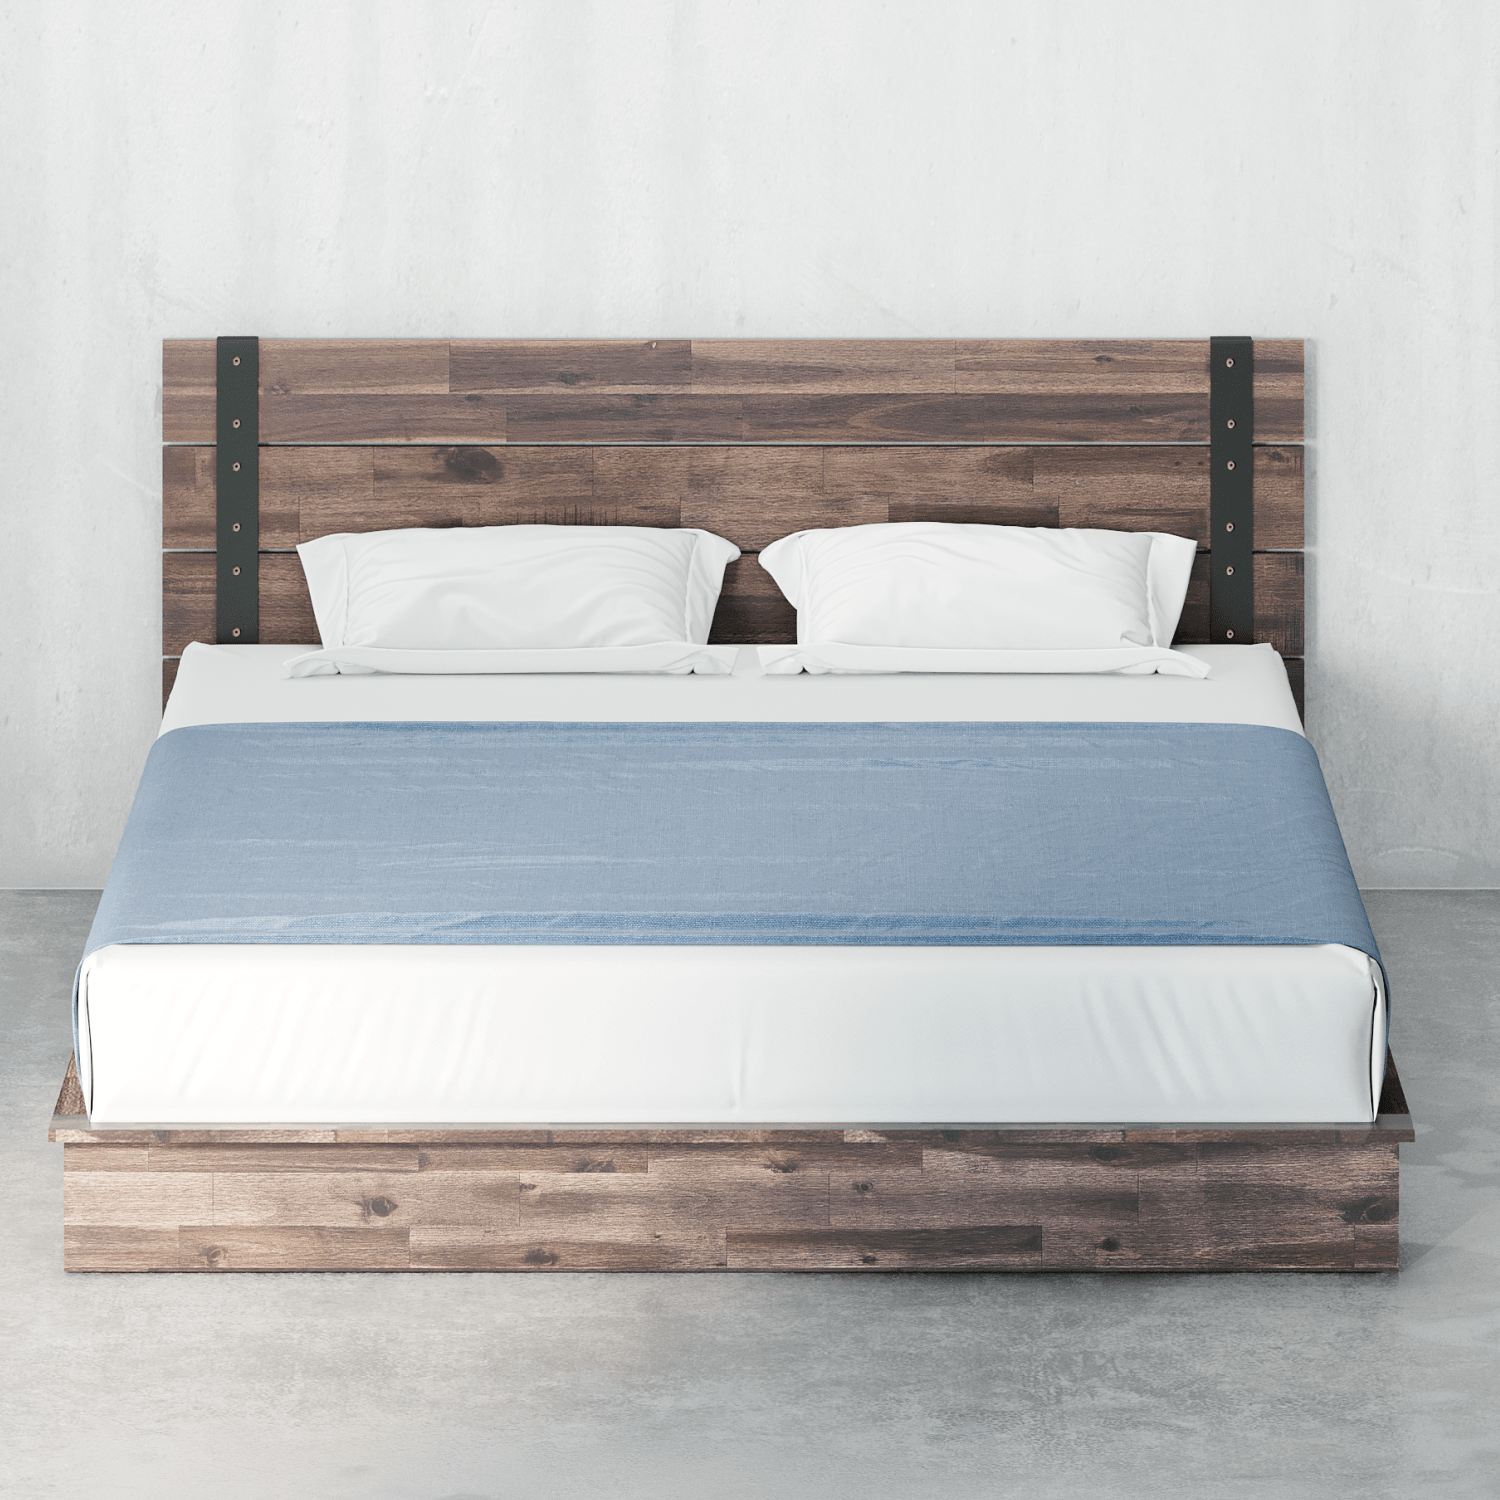 Brock Metal And Wood Platform Bed Frame, Wooden Platform Bed Frame Full